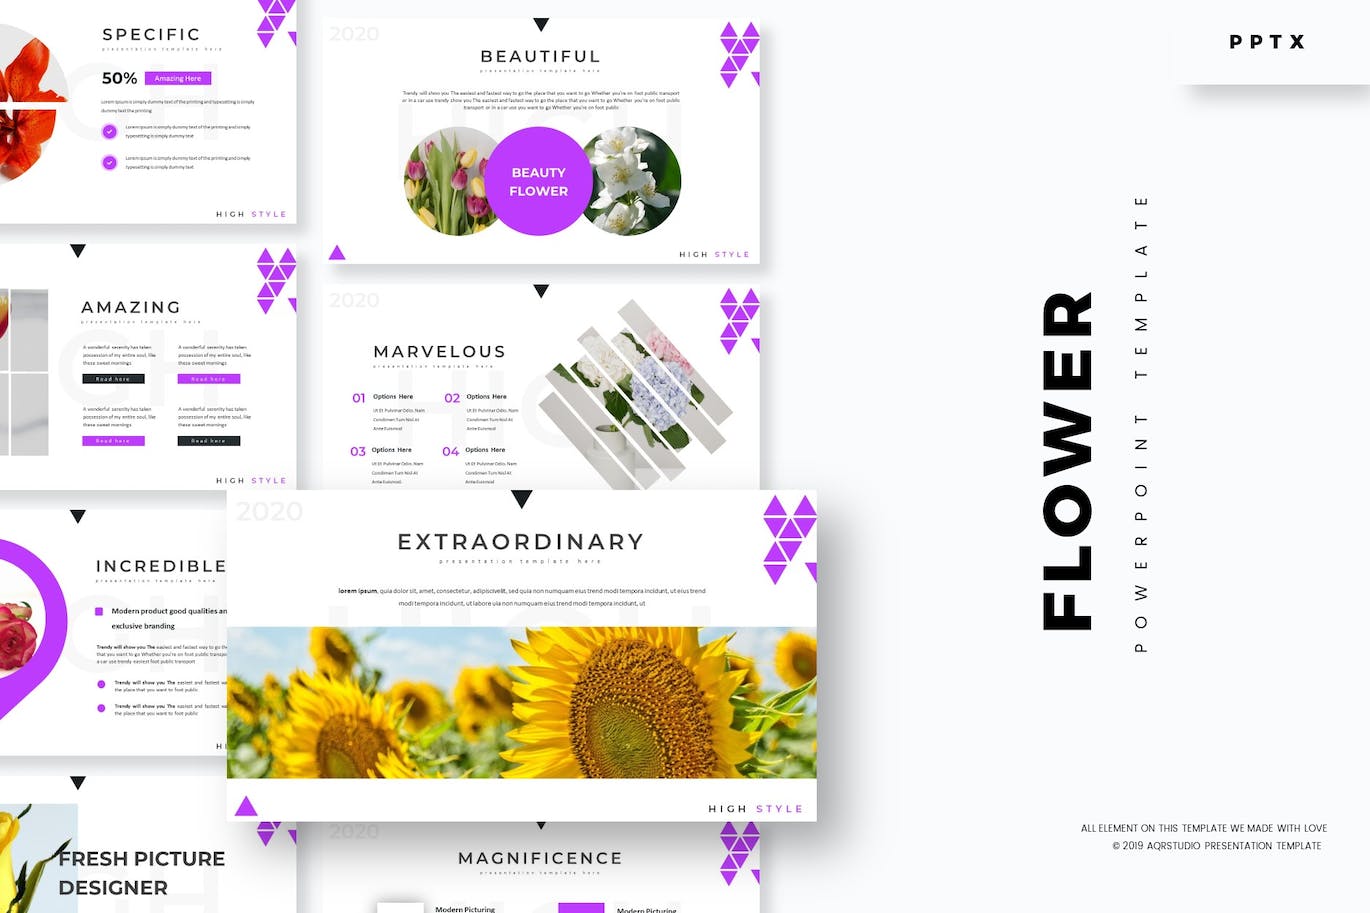 A selection of images of elegant flower-themed presentation slides.